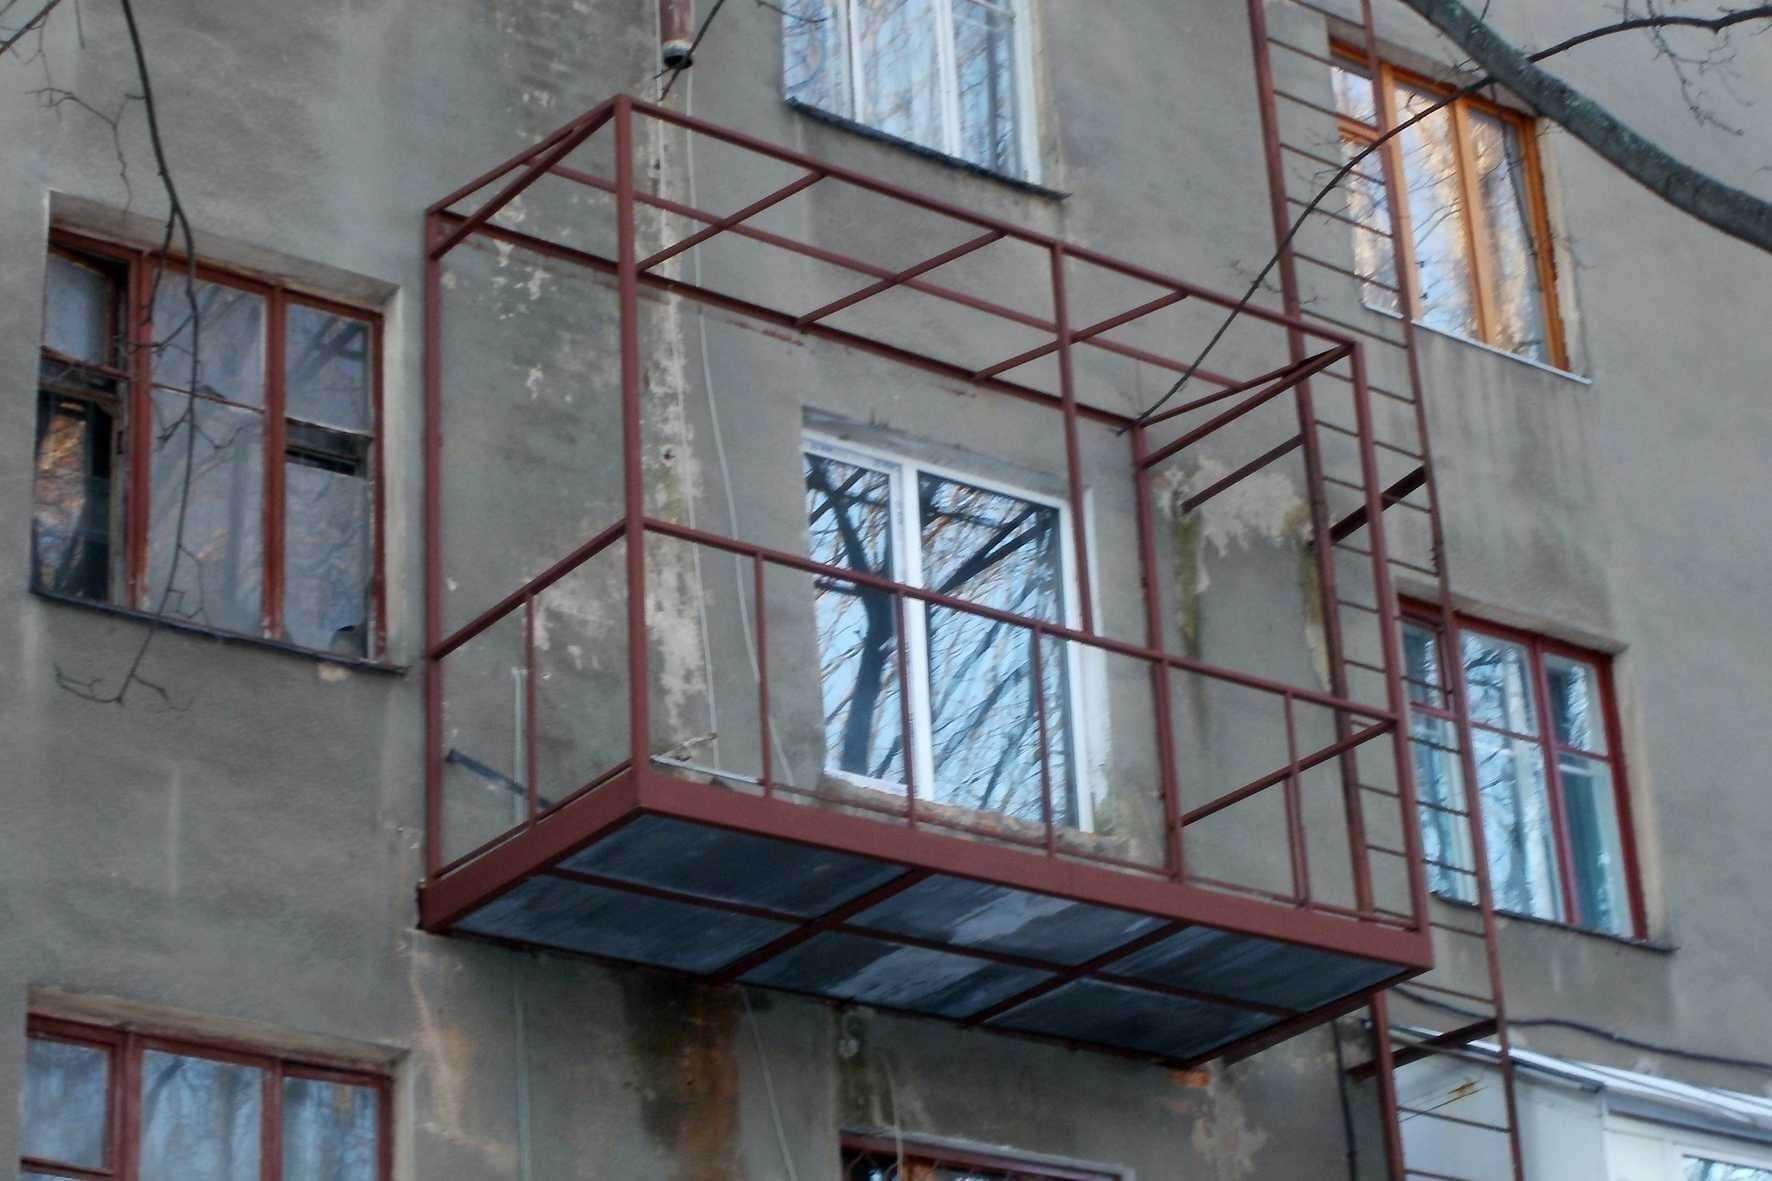 Наш балкон расширен на 30 см. обязаны ли мы узаконить его расширение? и если нет, то на основании какого закона?